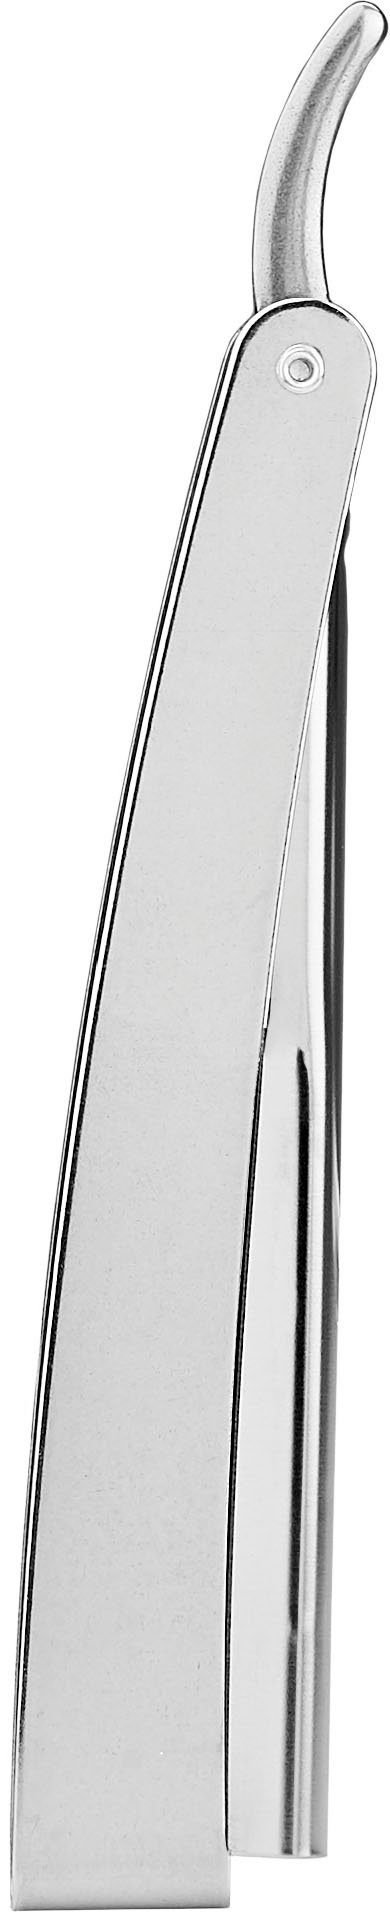 FRIPAC 1955 Rasiermesser silberfarben, Rasiermesser praktischem mit Klappgriff